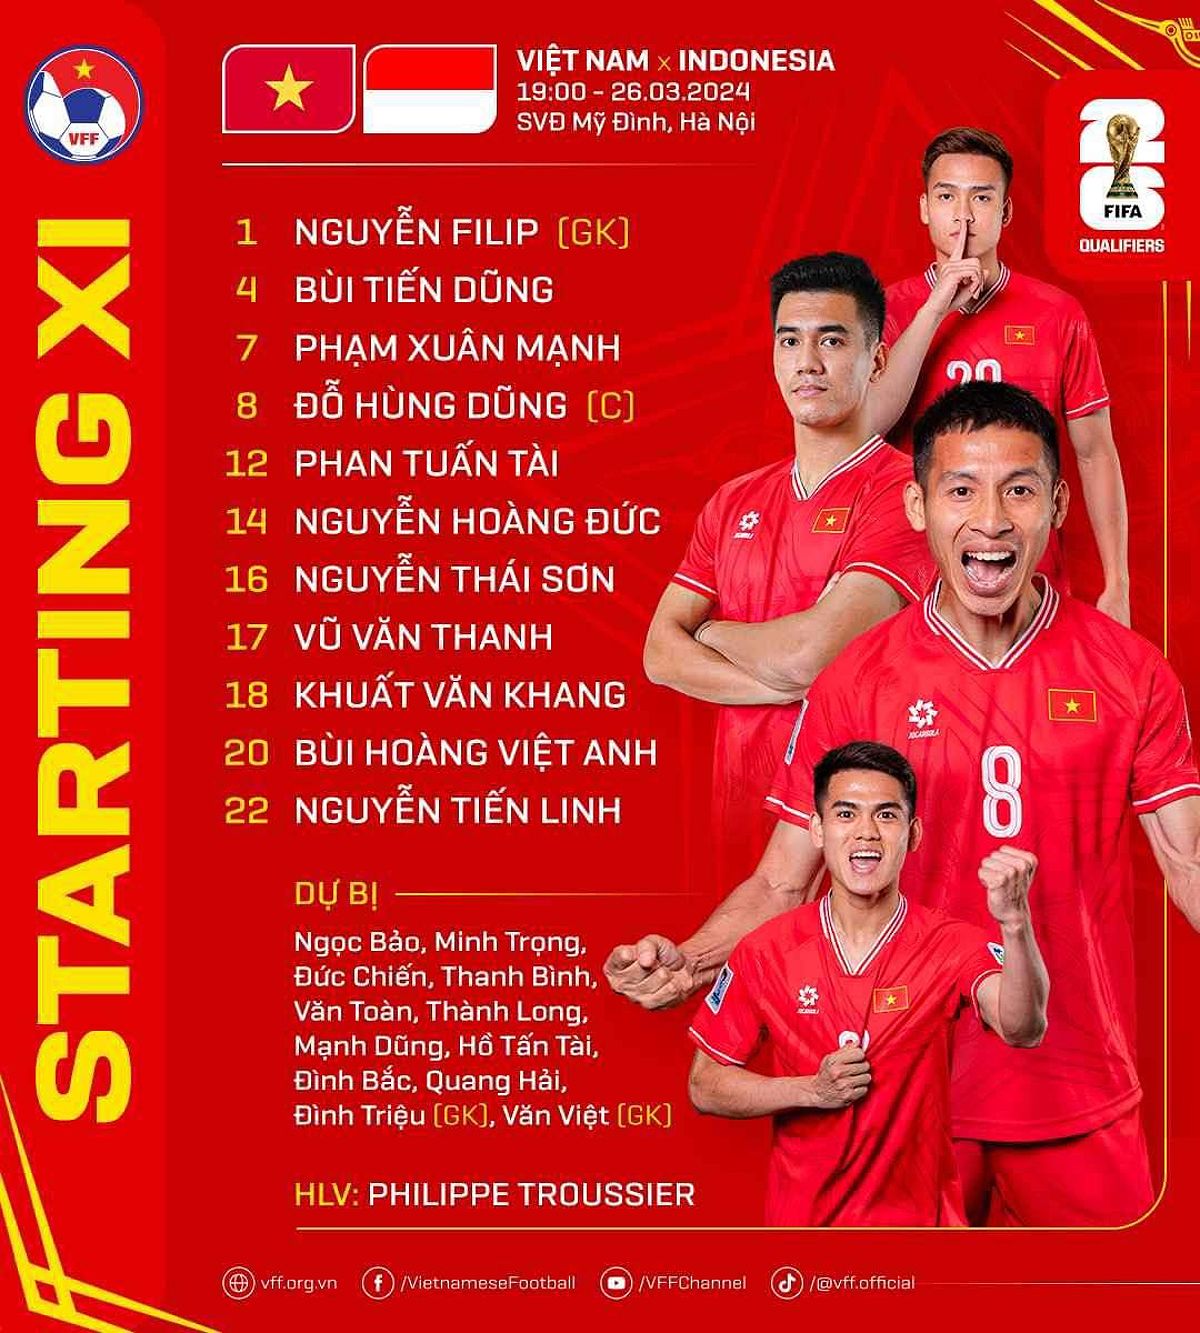 Đội hình mới của ĐT Việt Nam trước trận đấu với Indonesia - 1625737140